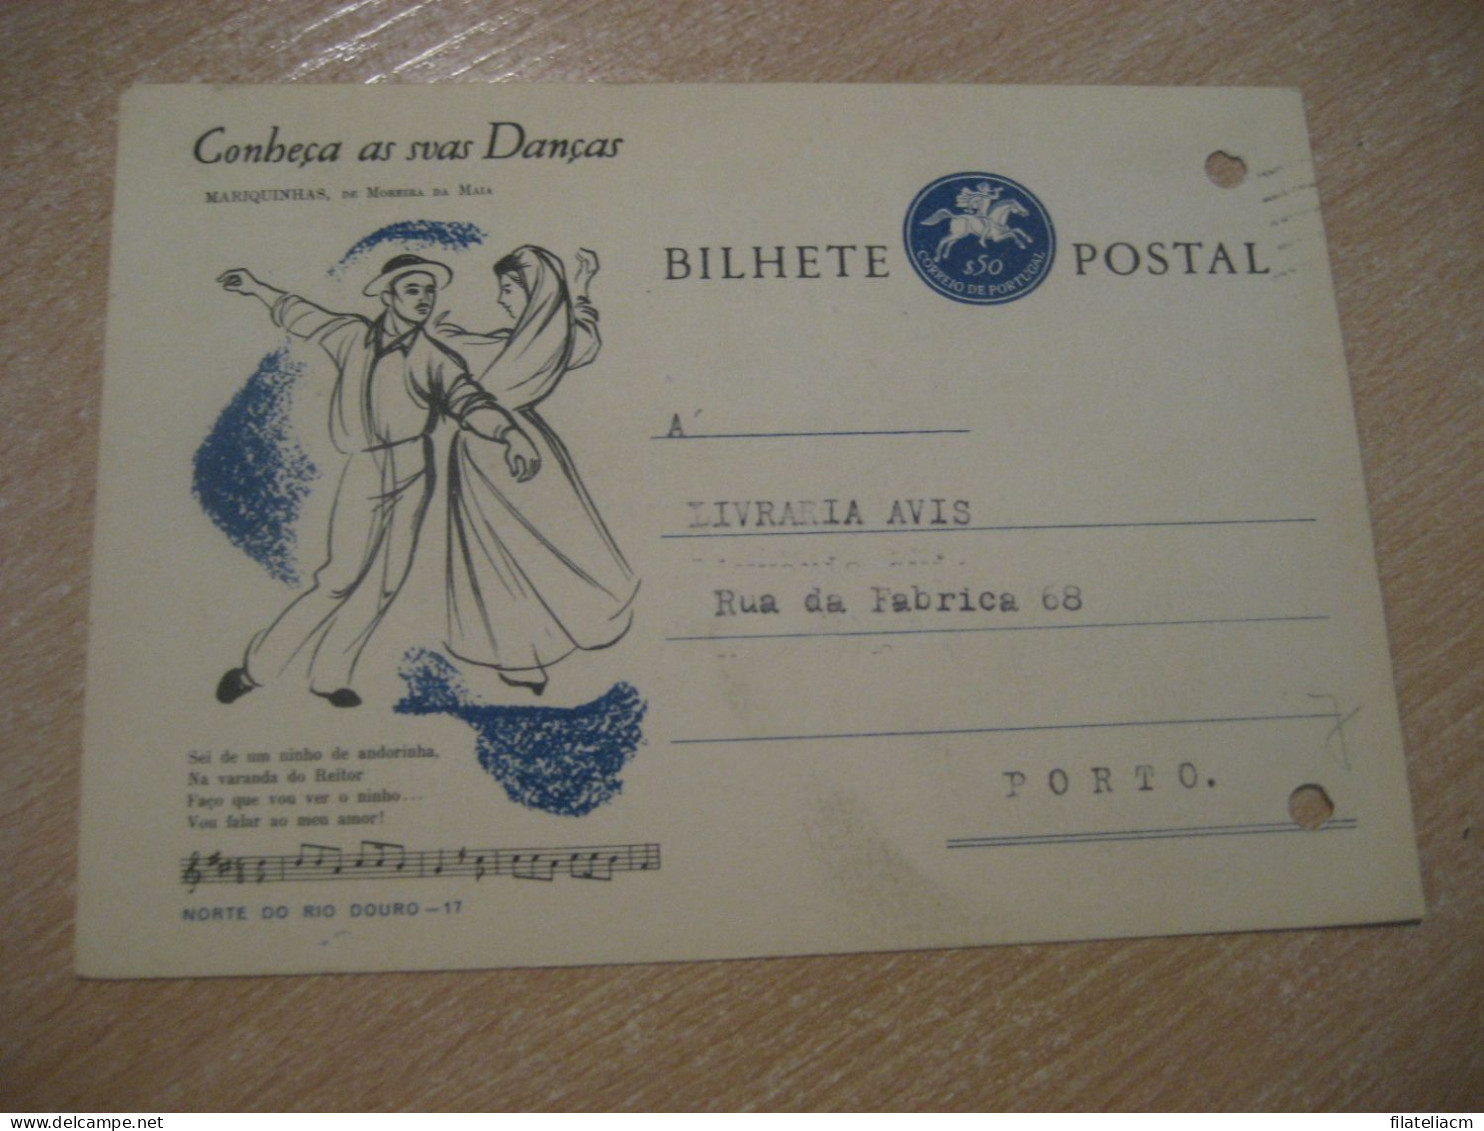 CASTELO BRANCO 1964 To Porto Conheça As Suas Danças Mariquinhas De Moreira Da Maia Bilhete Postal Stationery PORTUGAL - Briefe U. Dokumente